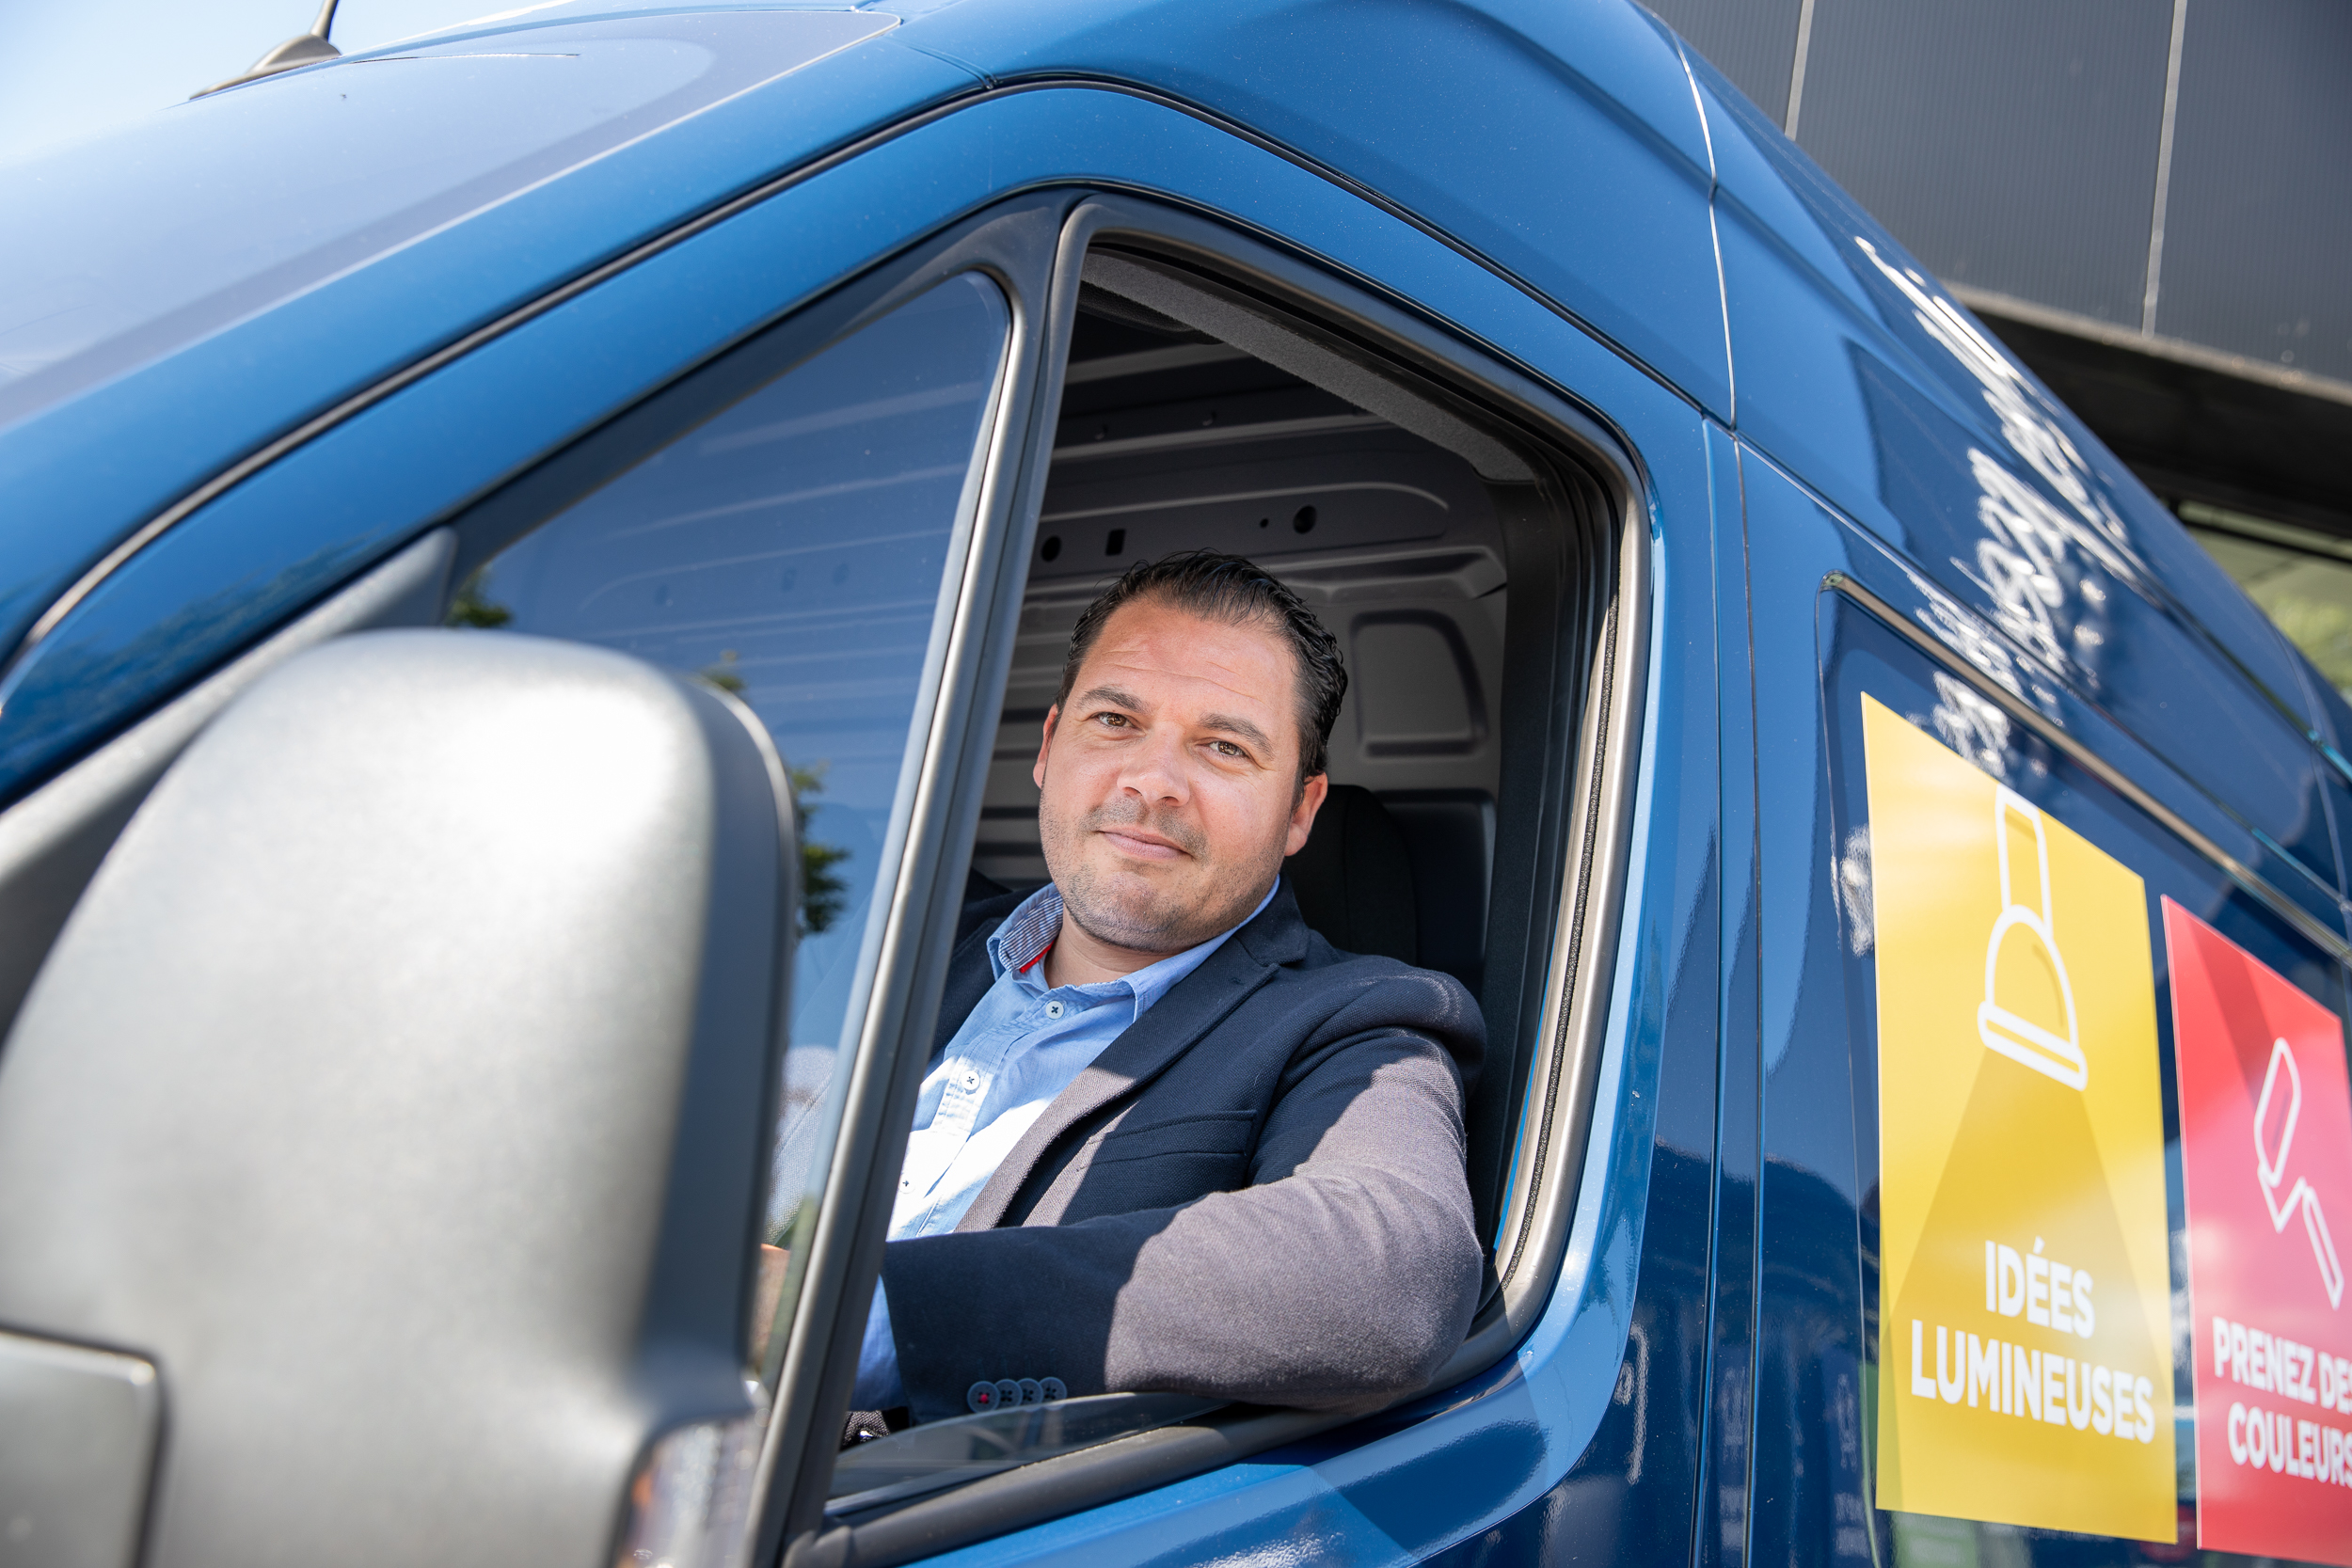 Hoopvol Auto Bepalen Athlon Belgium: 5 manieren om downtime bestelwagen te verminderen